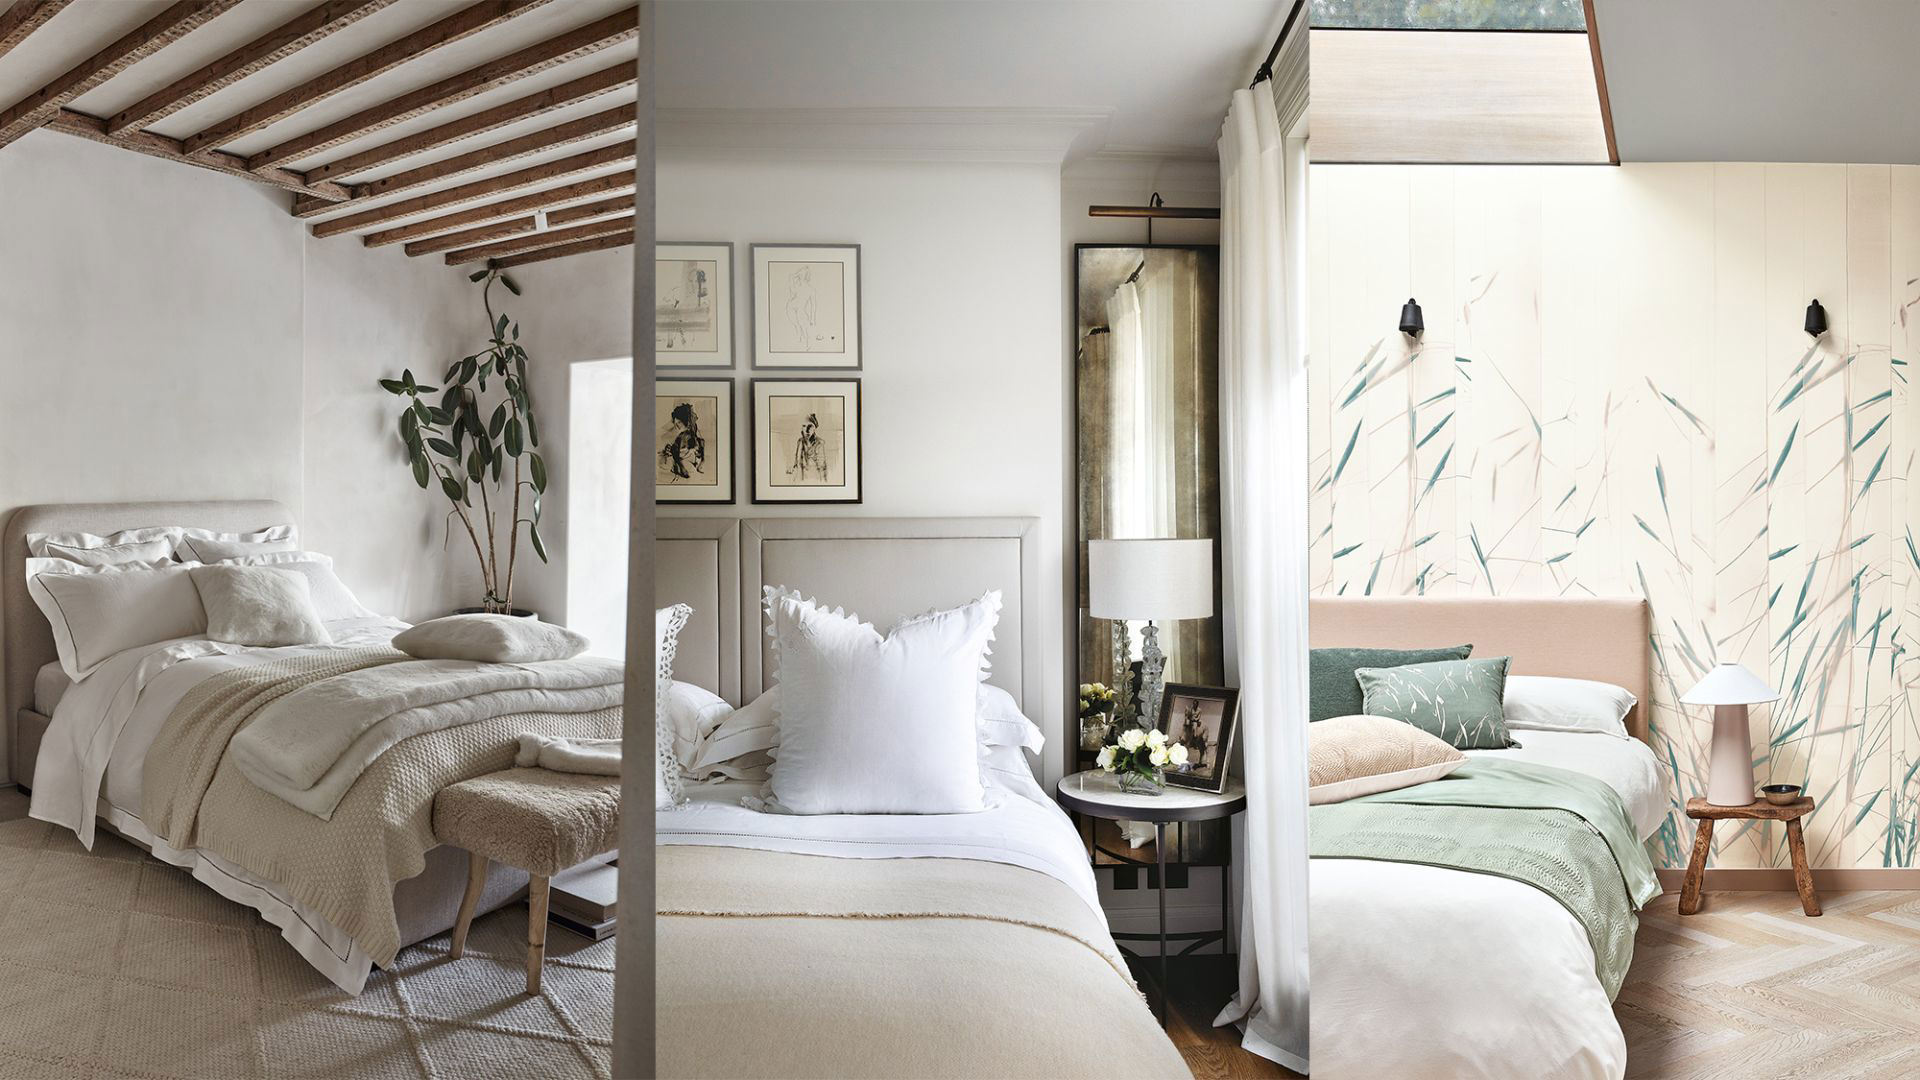 Relaxing bedroom ideas – 12 soothing sleep spaces